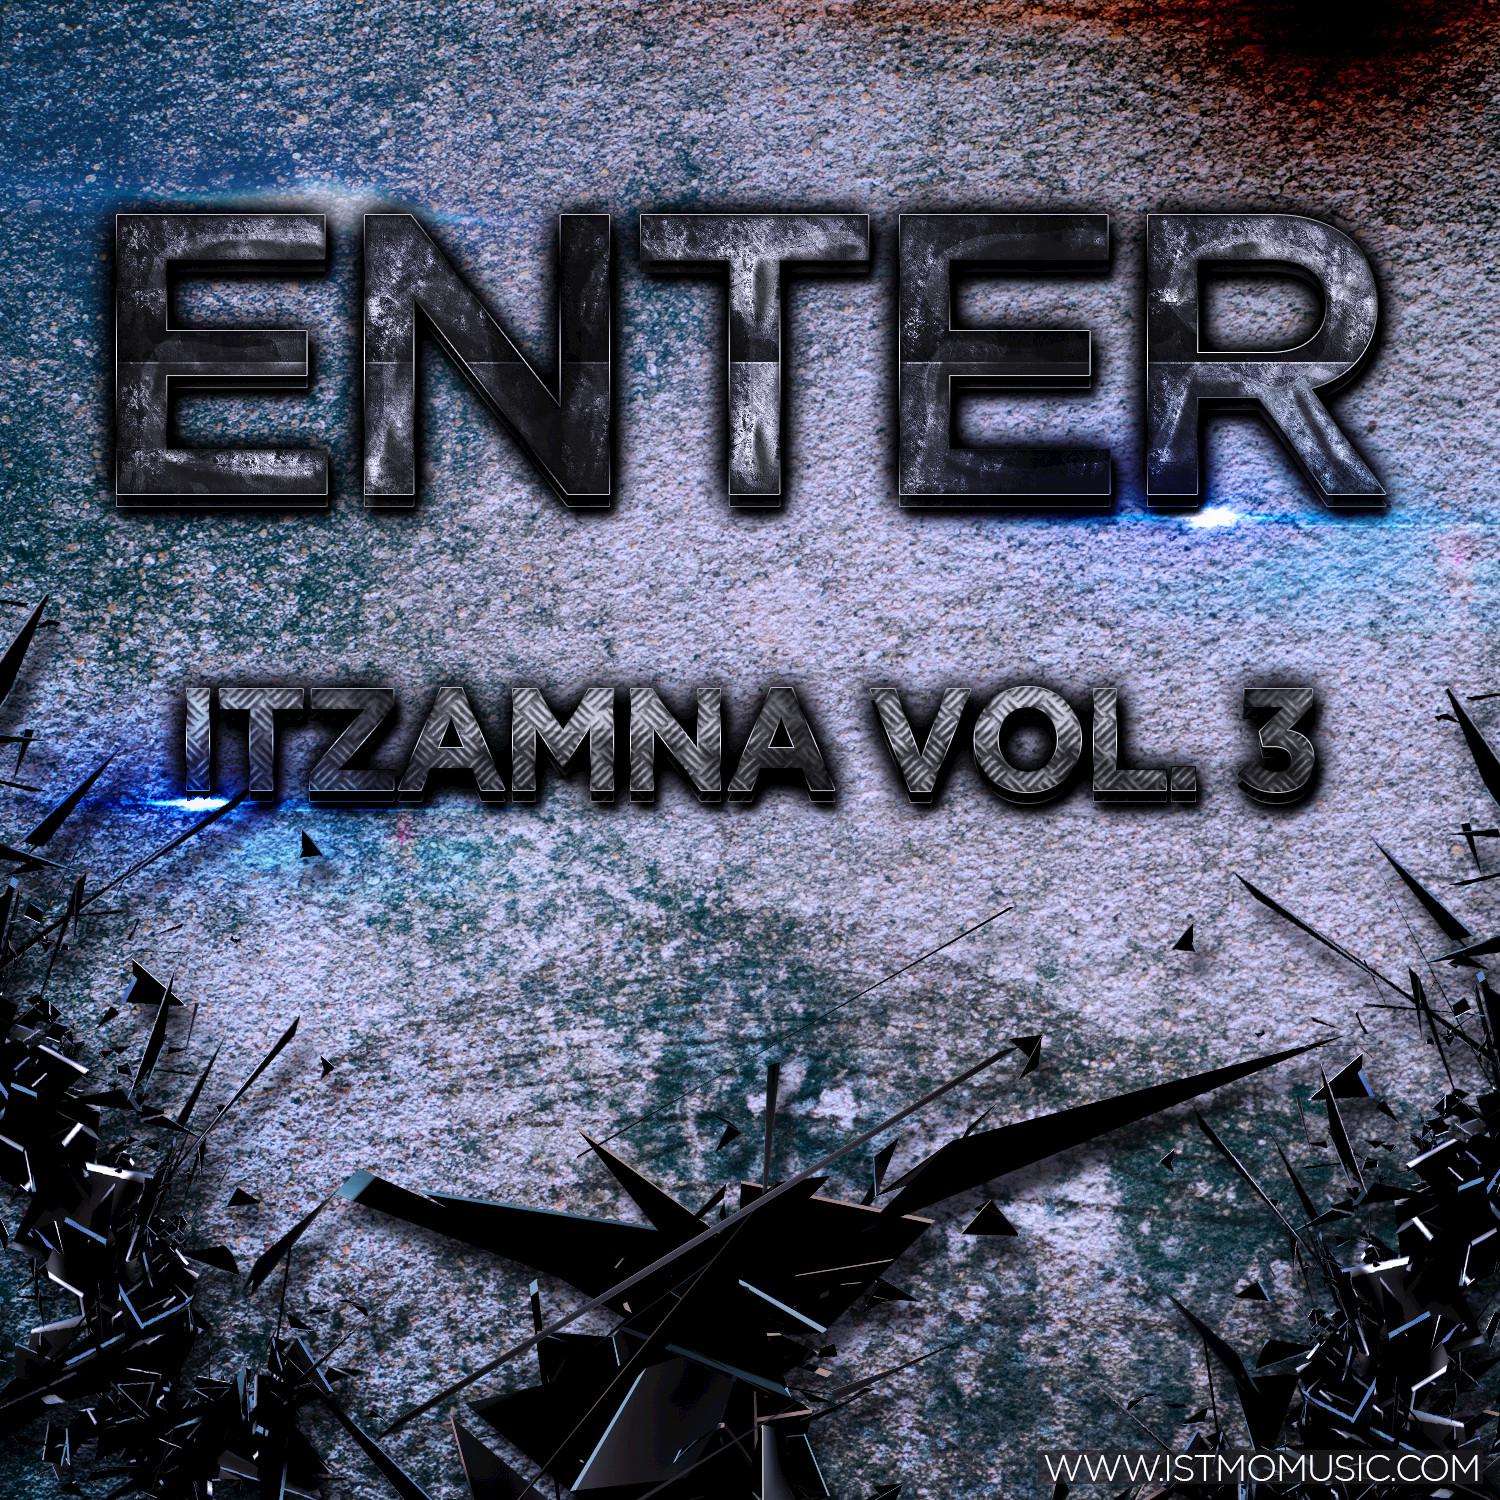 Enter Itzamna Vol. 3 (Continuous DJ Mix)